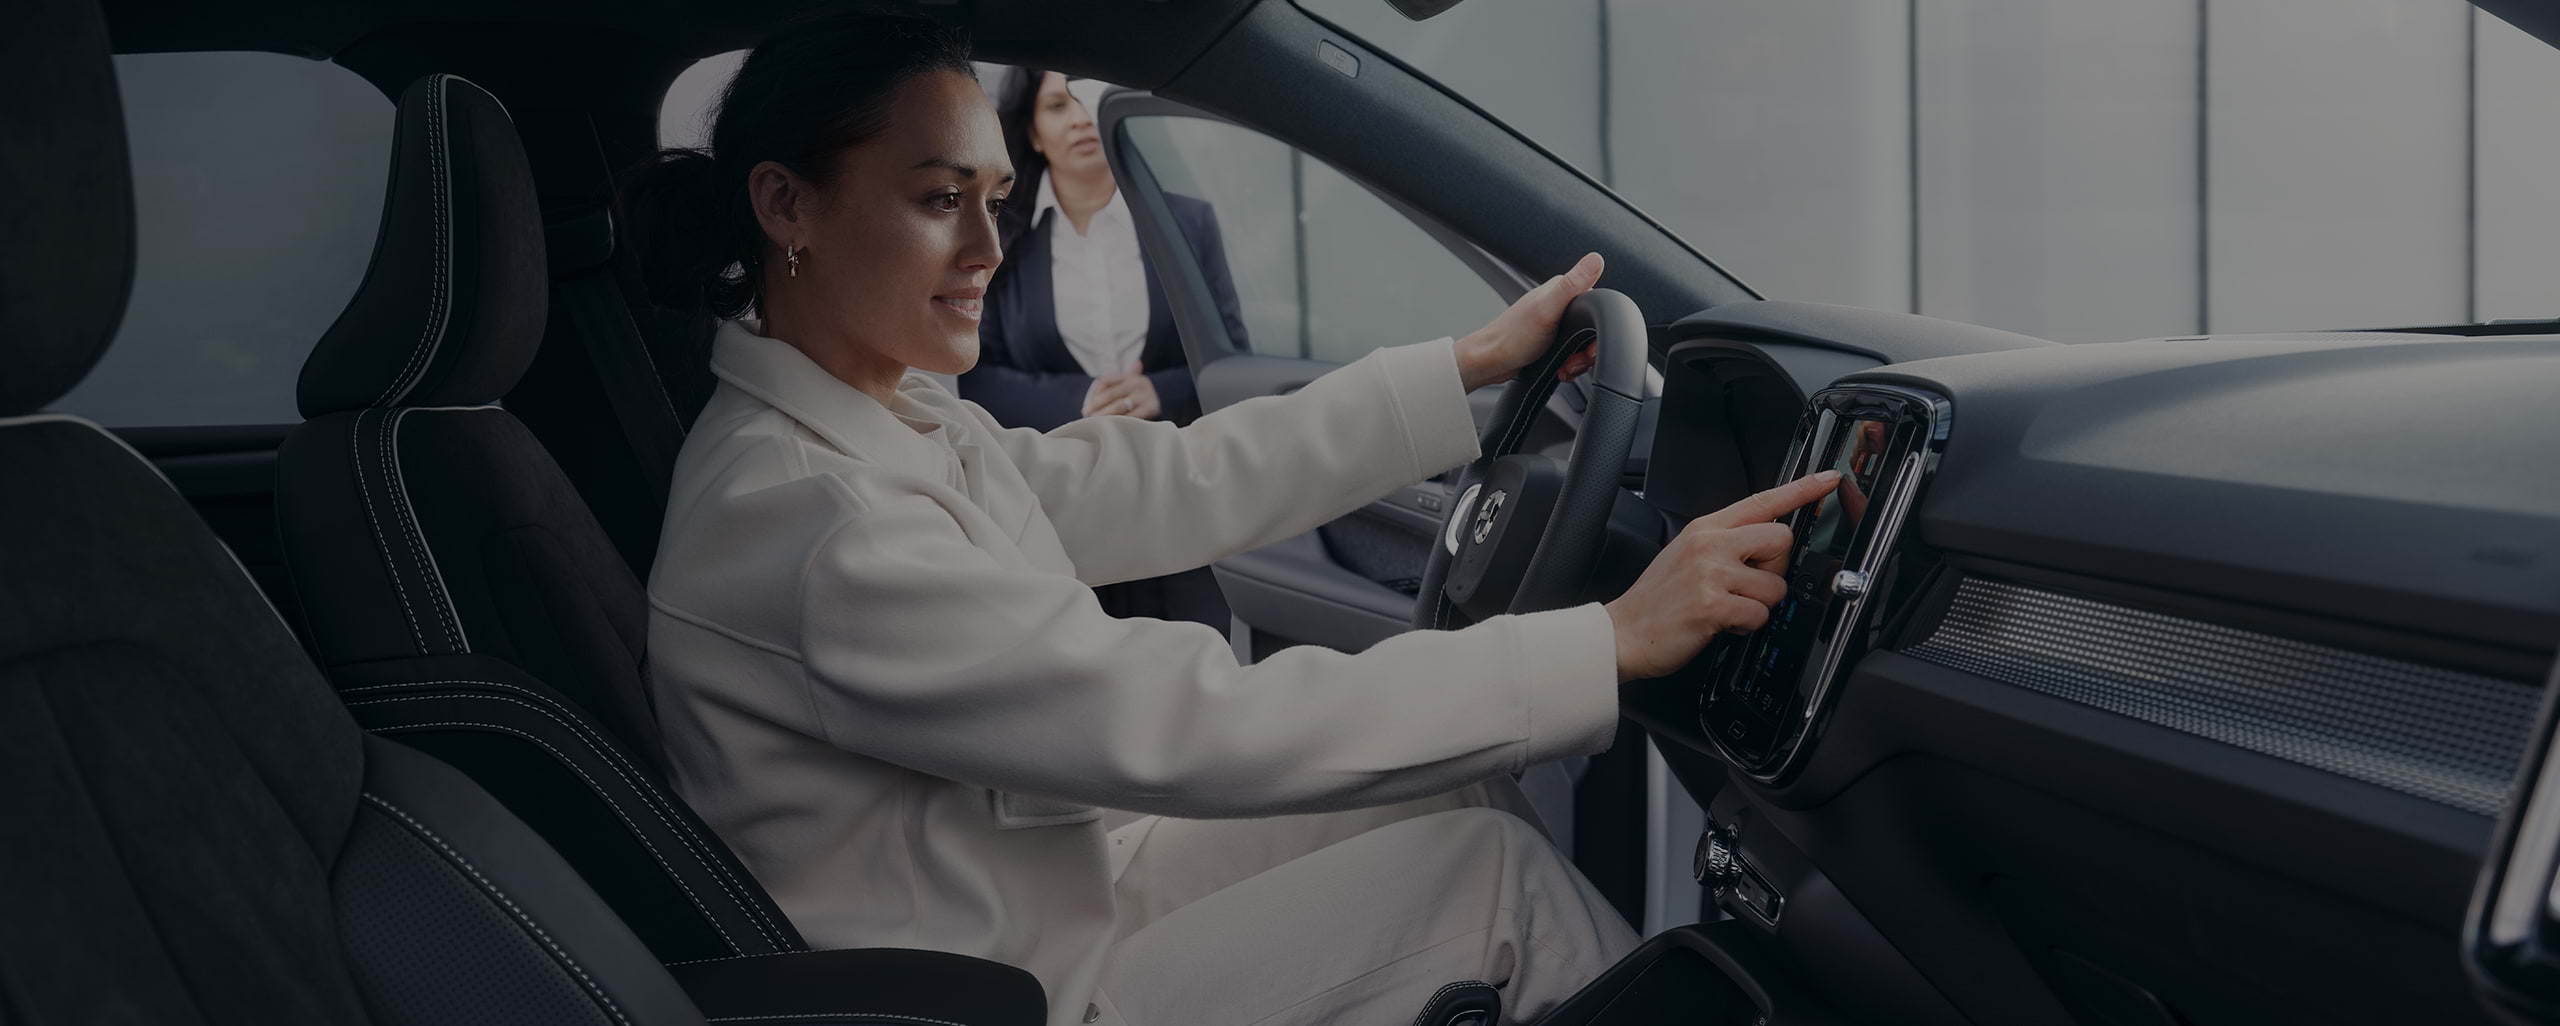 Una joven, supervisada por una vendedora, está sentada sonriente en el asiento del conductor tocando la consola central de un Volvo.